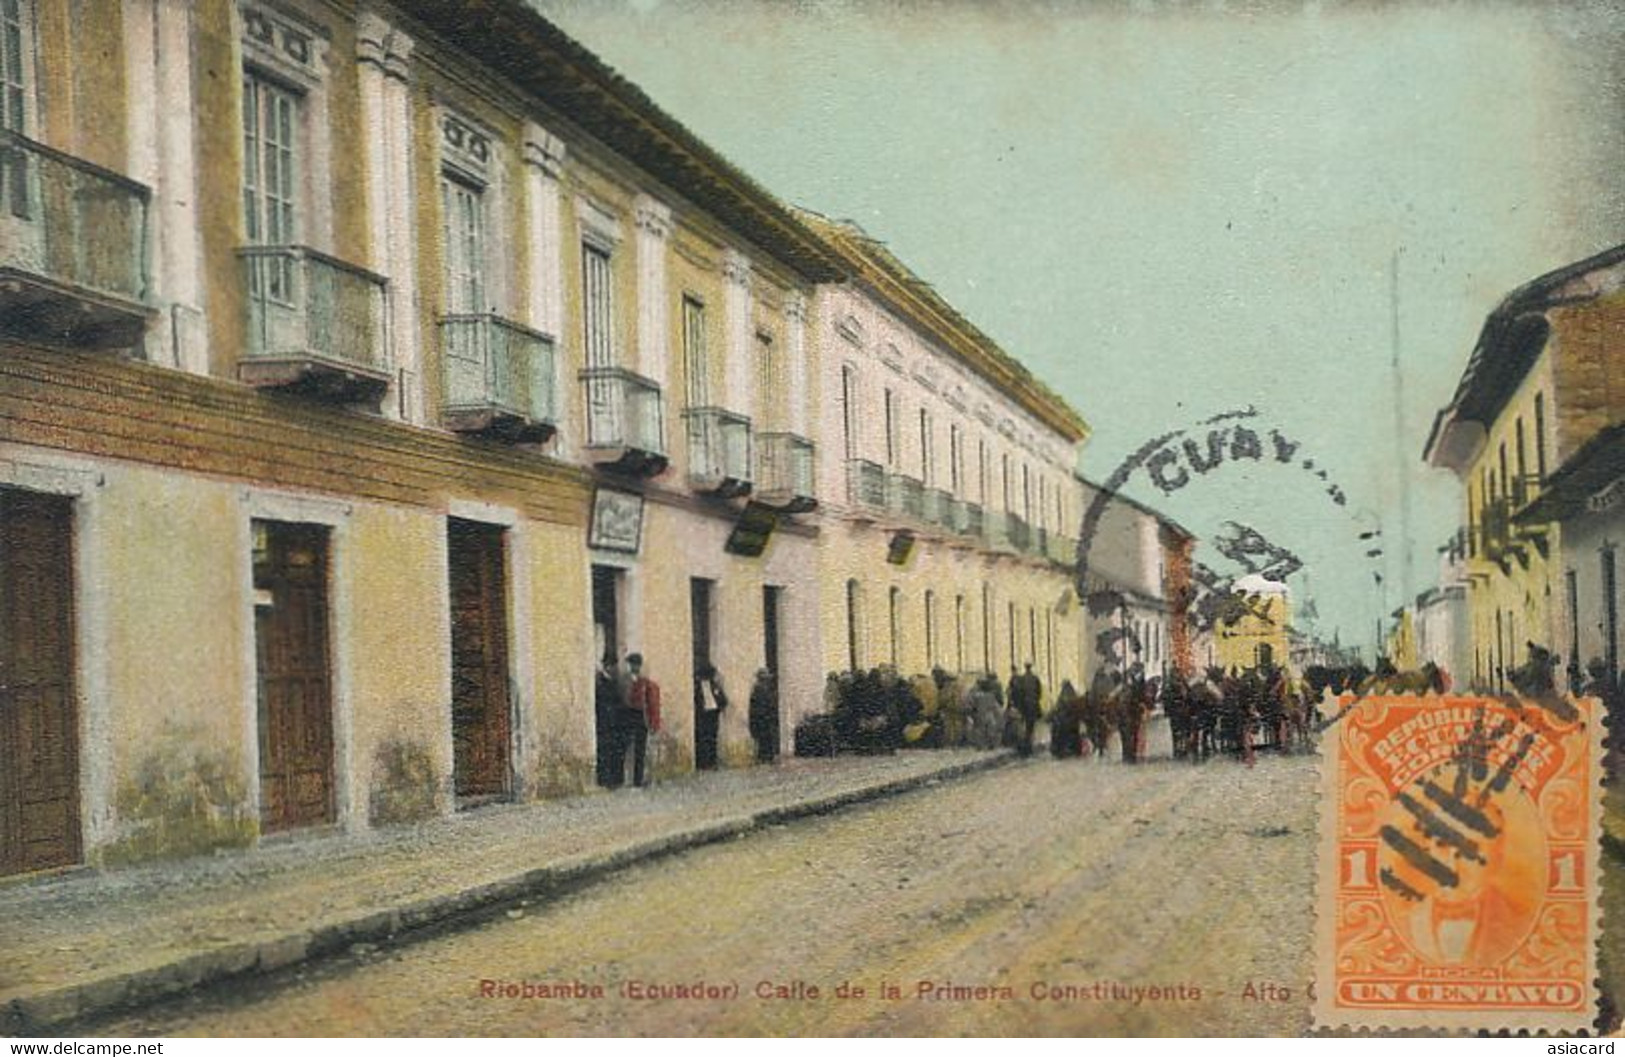 Riobamba Calle De La Primera Constituyente - Ecuador